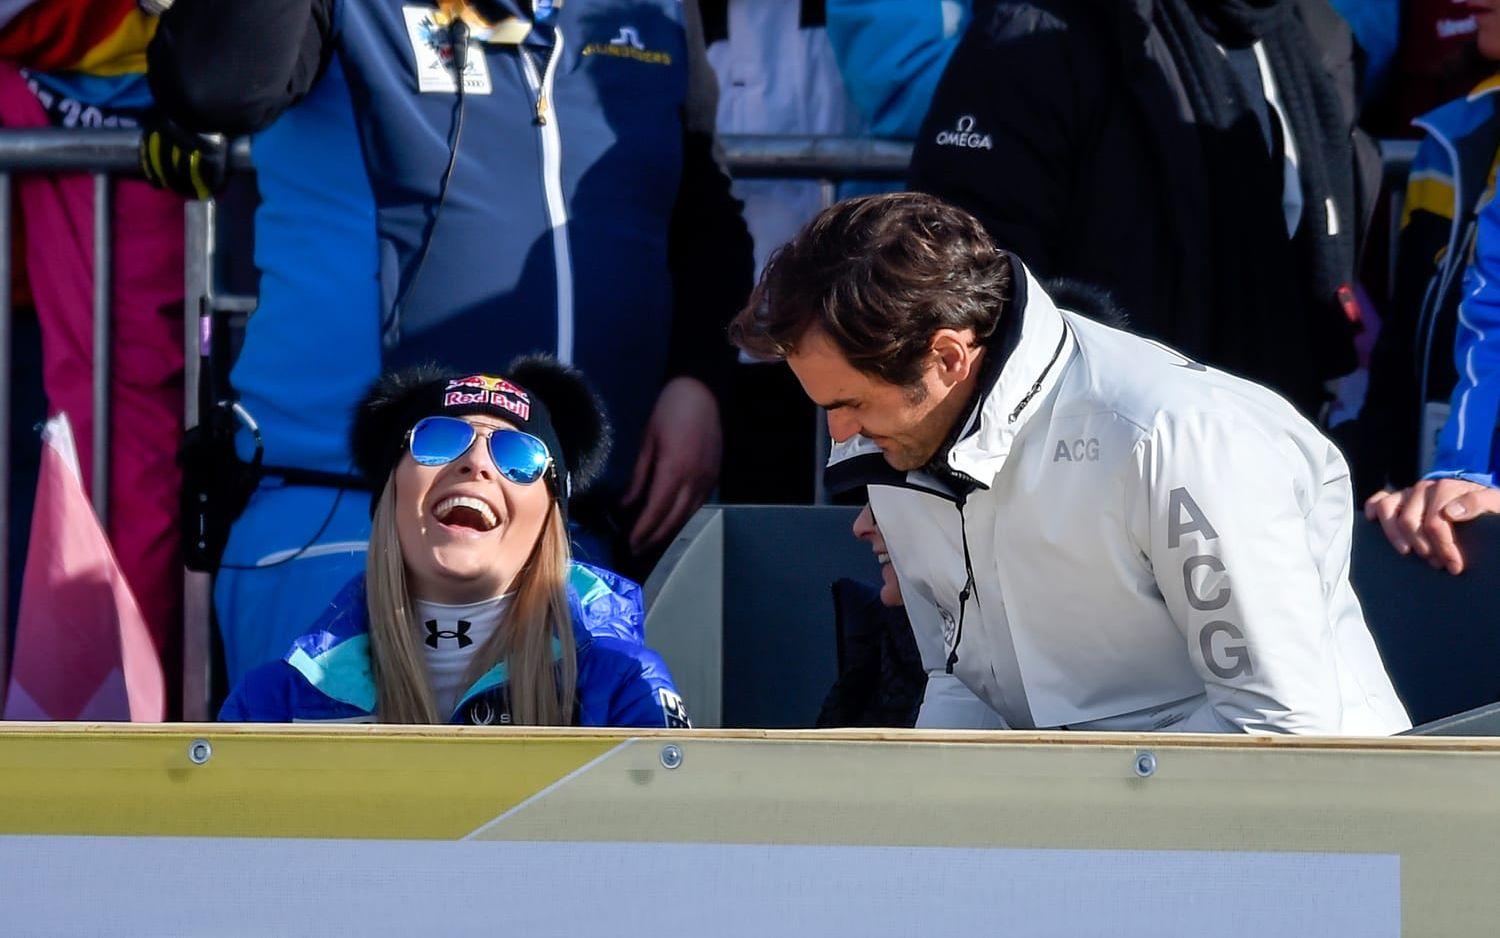 Tidigare under veckan fick Vonn även träffa ett av tennisens största namn, Roger Federer, som gästade VM-tävlingarna i St. Moritz. Foto: Bildbyrån